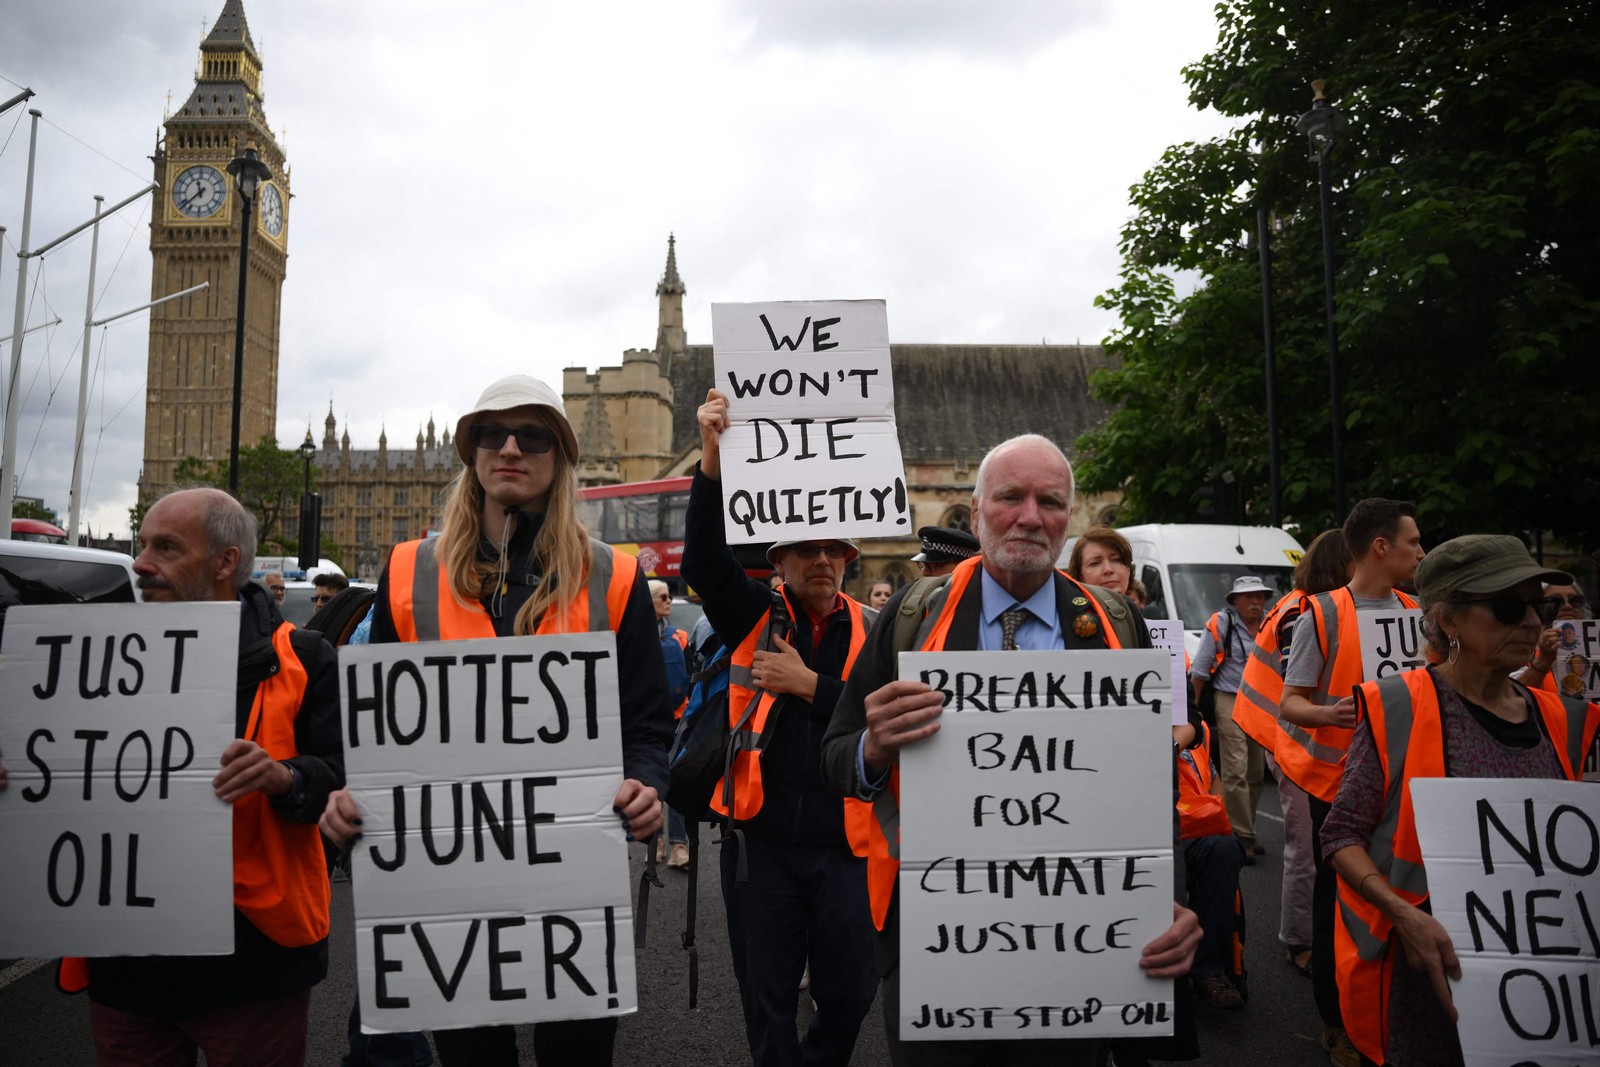 Ativistas climáticos do movimento 'Just Stop Oil' protestam na Praça do Parlamento em Londres, enquanto levantam cartazes como "não morreremos em silêncio" e "junho mais quente de todos os tempos". — Foto: Daniel LEAL/AFP